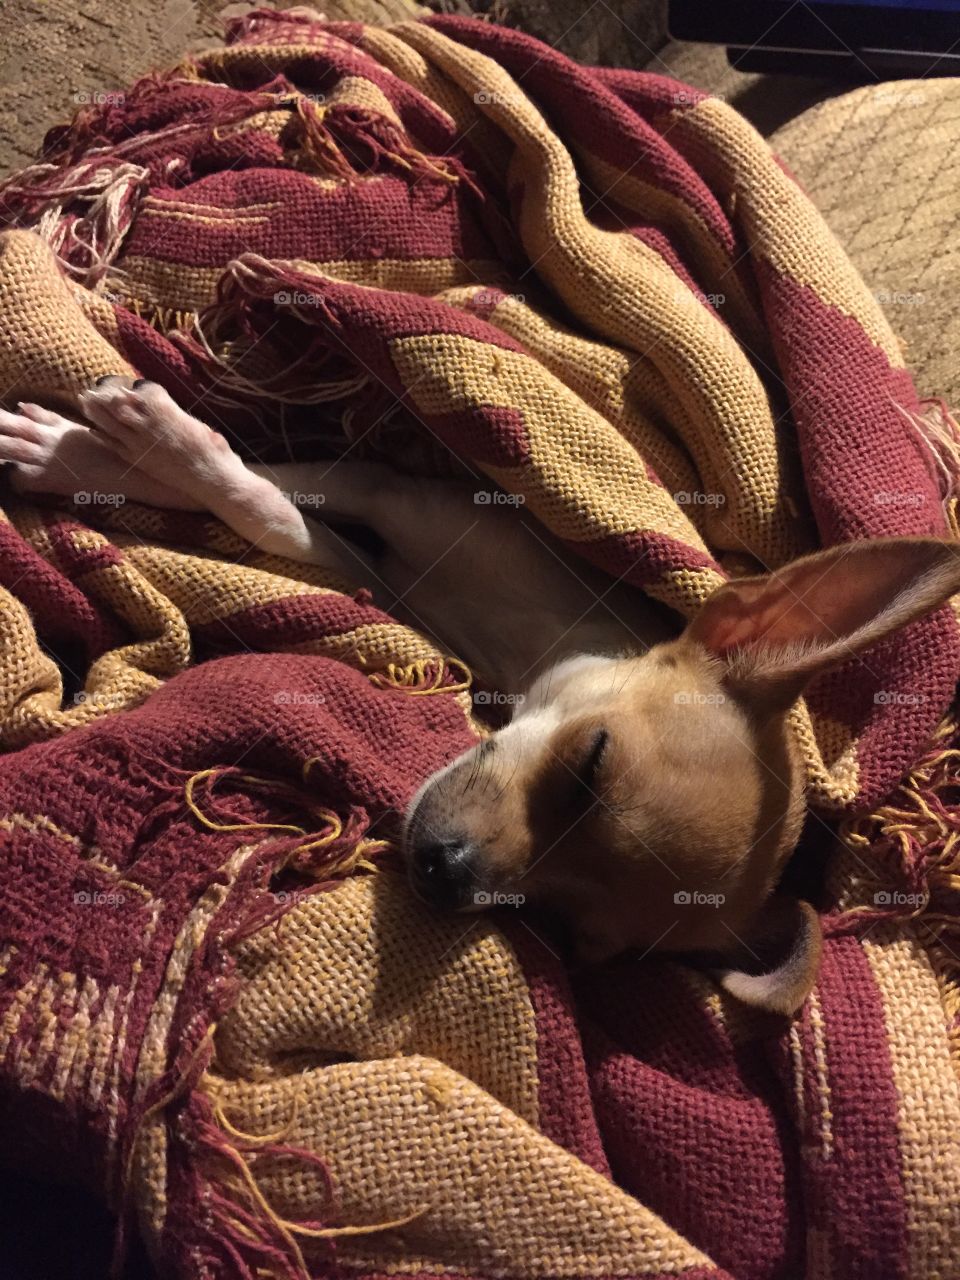 Teacup Chihuahua sound asleep